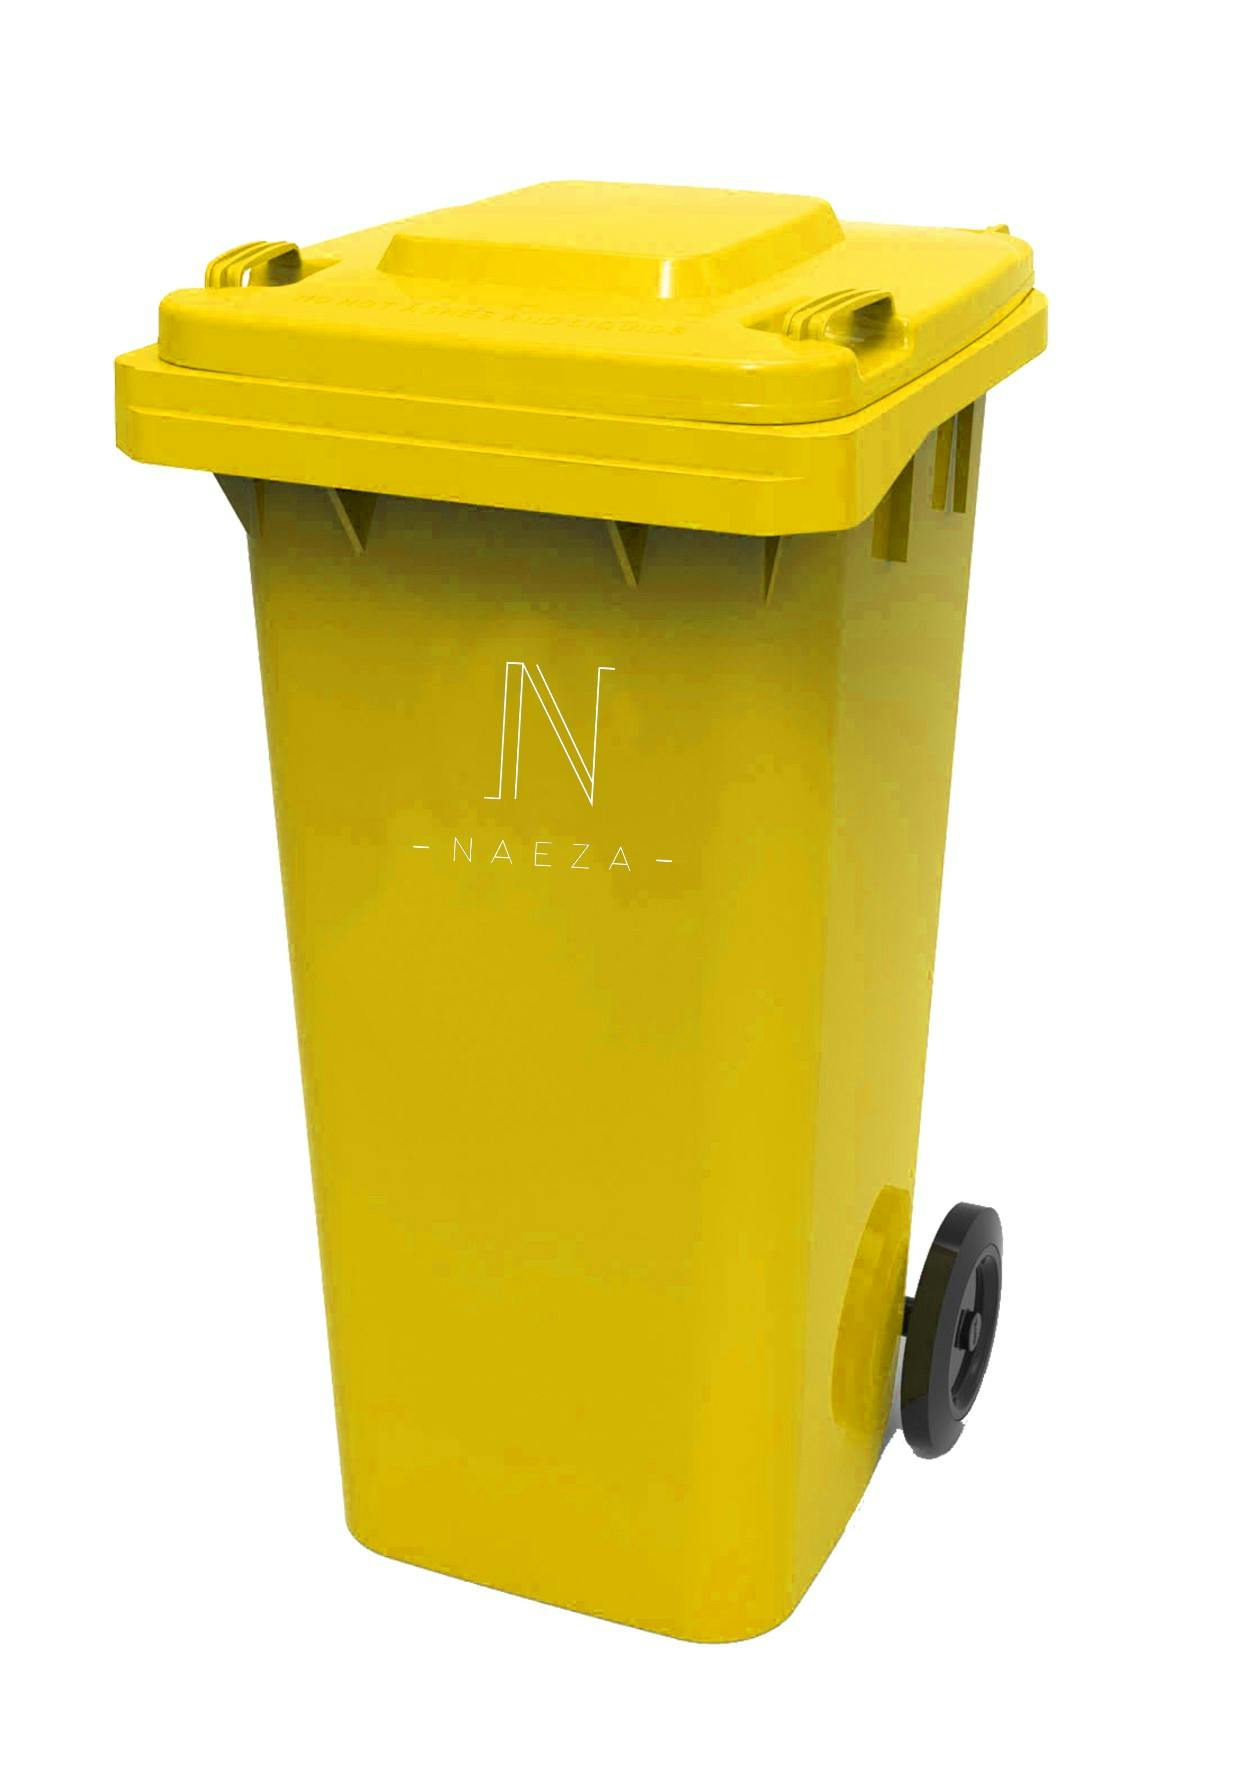 Cubo de basura con ruedas en plástico, volumen de 240 litros, amarillo